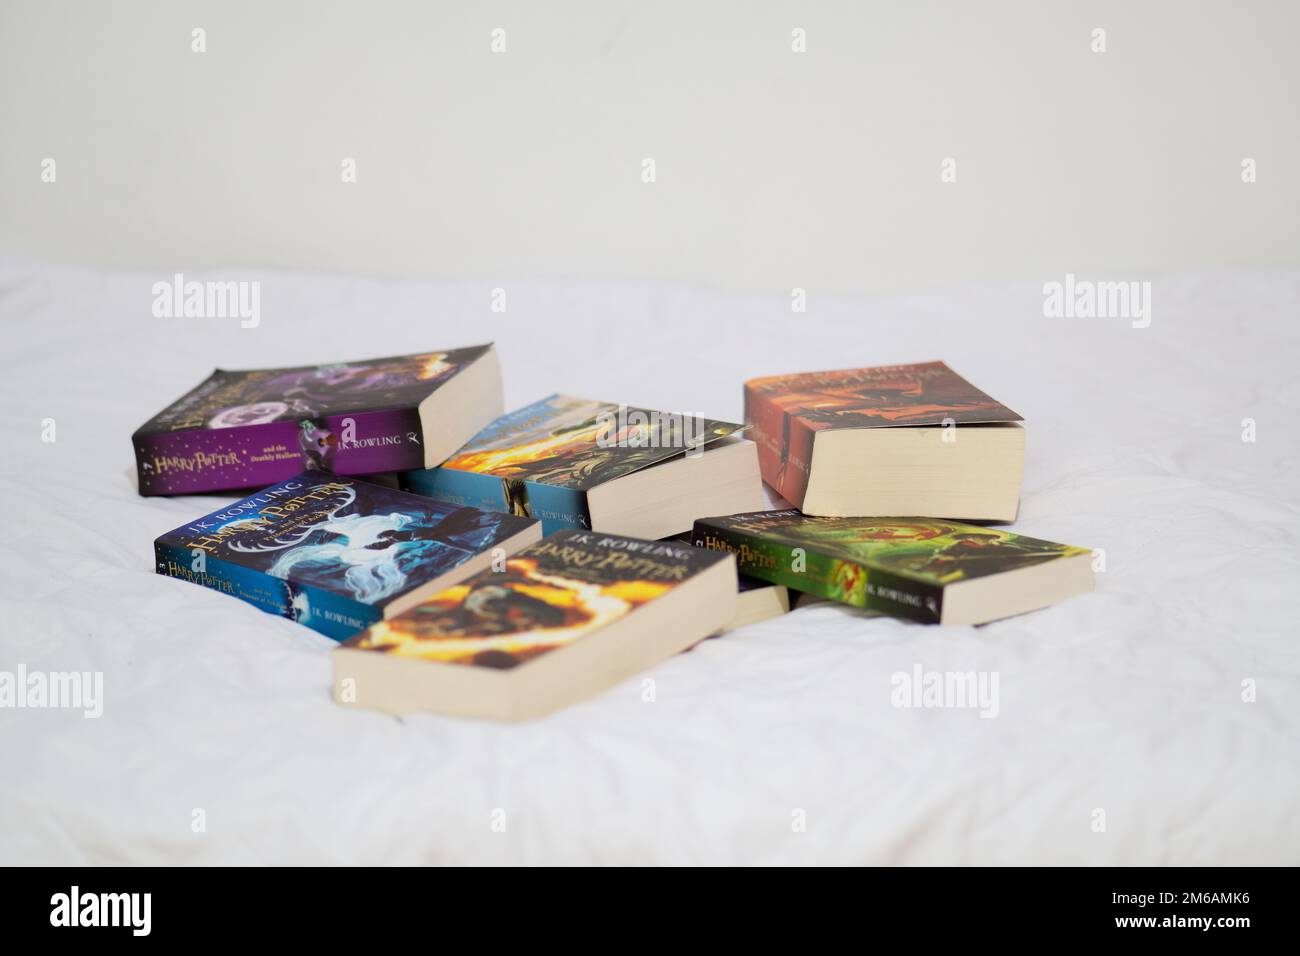 Harry Potter todos los libros. Todas las partes de los libros de Harry Potter. Libros de Harry Potter sobre fondo blanco. Foto de stock